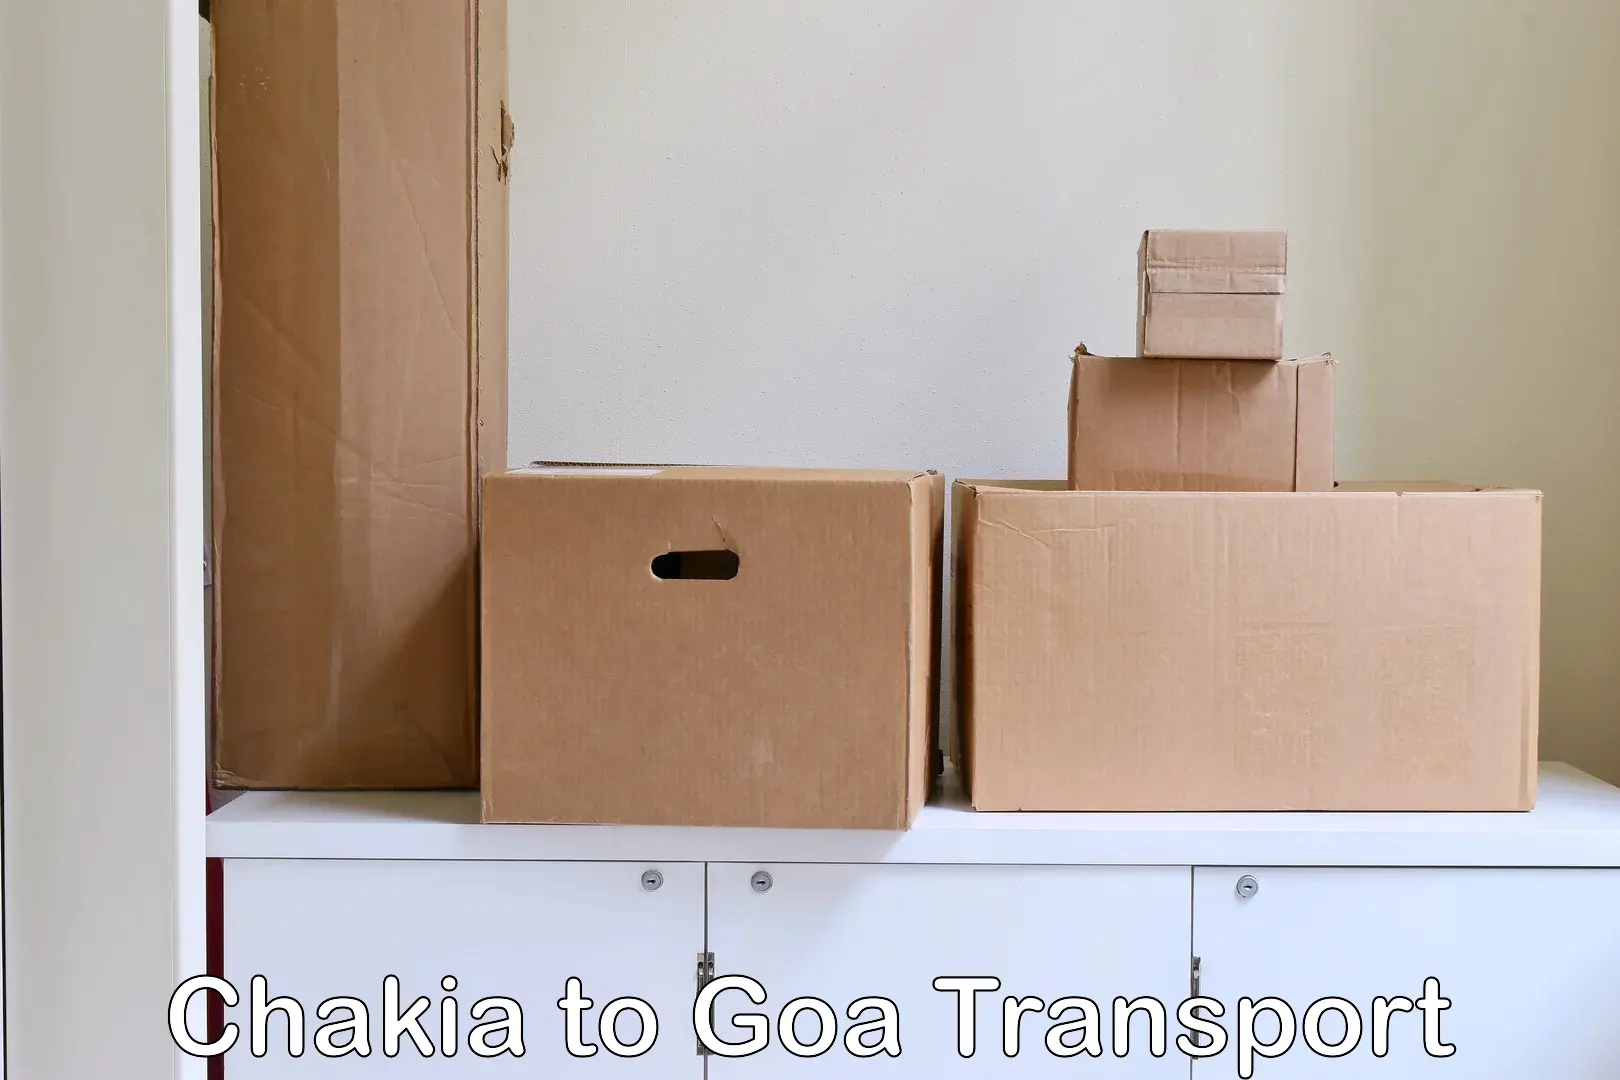 Cargo transport services Chakia to South Goa